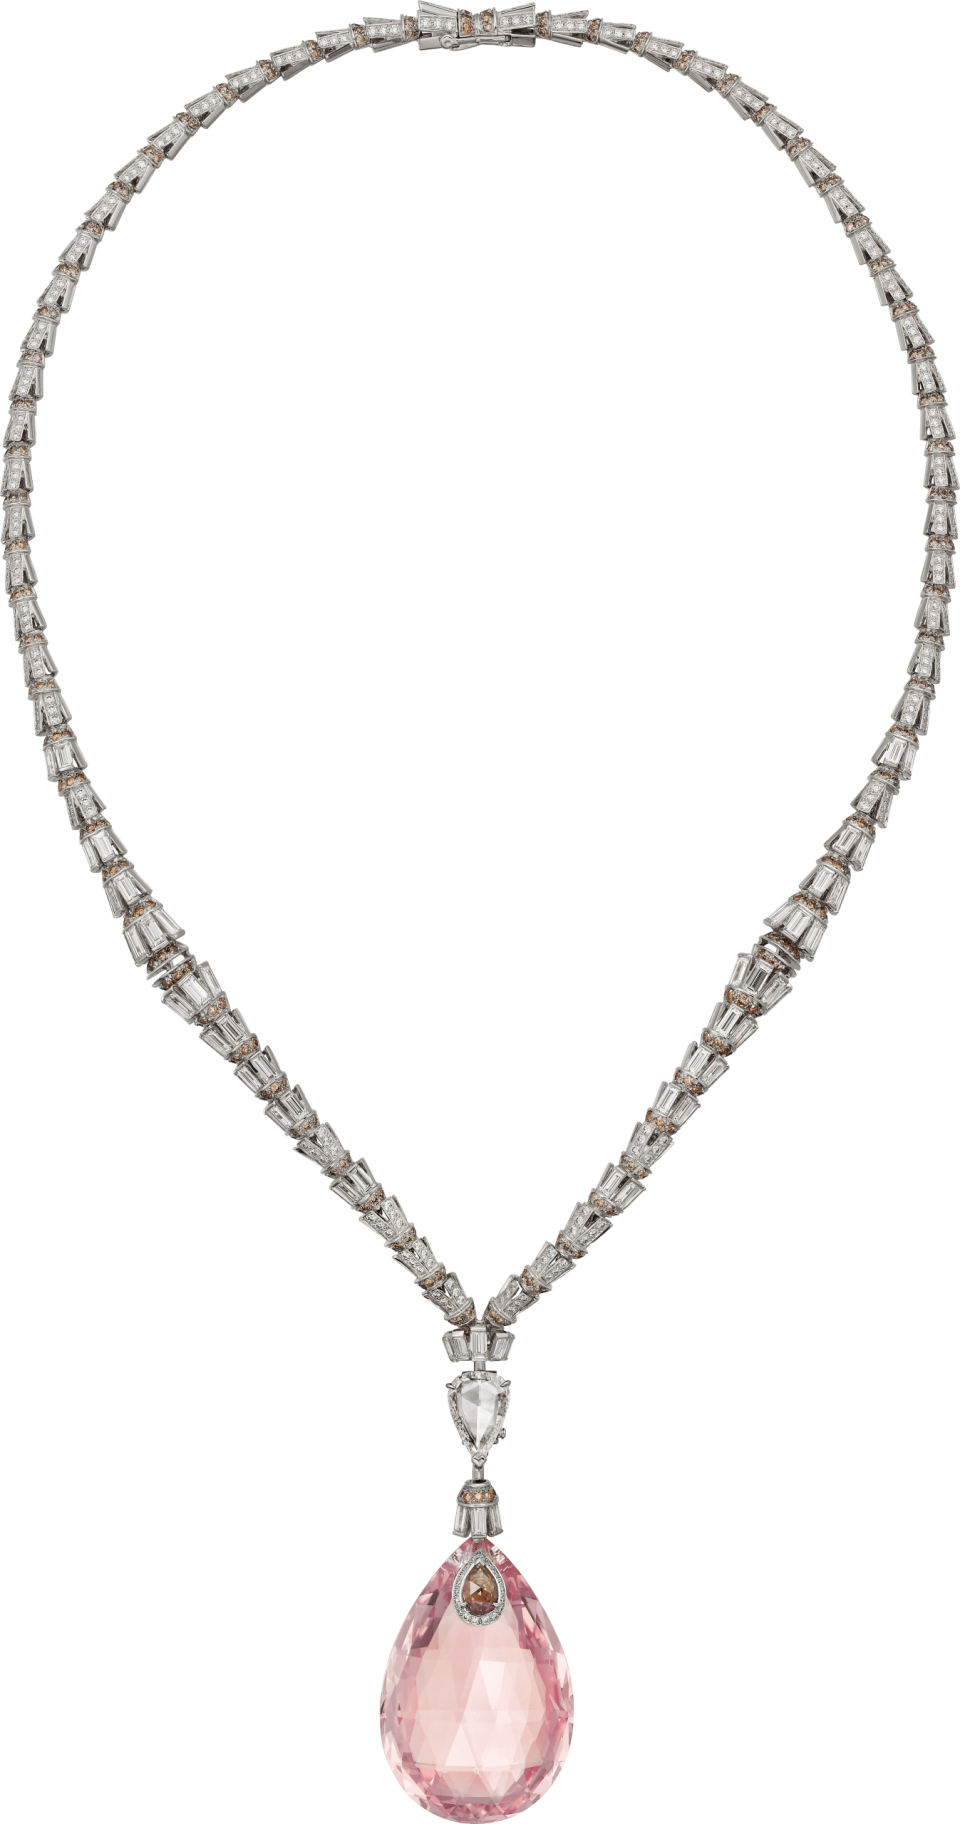 Cartier Briolette Cut Necklace - Publicity - 2022